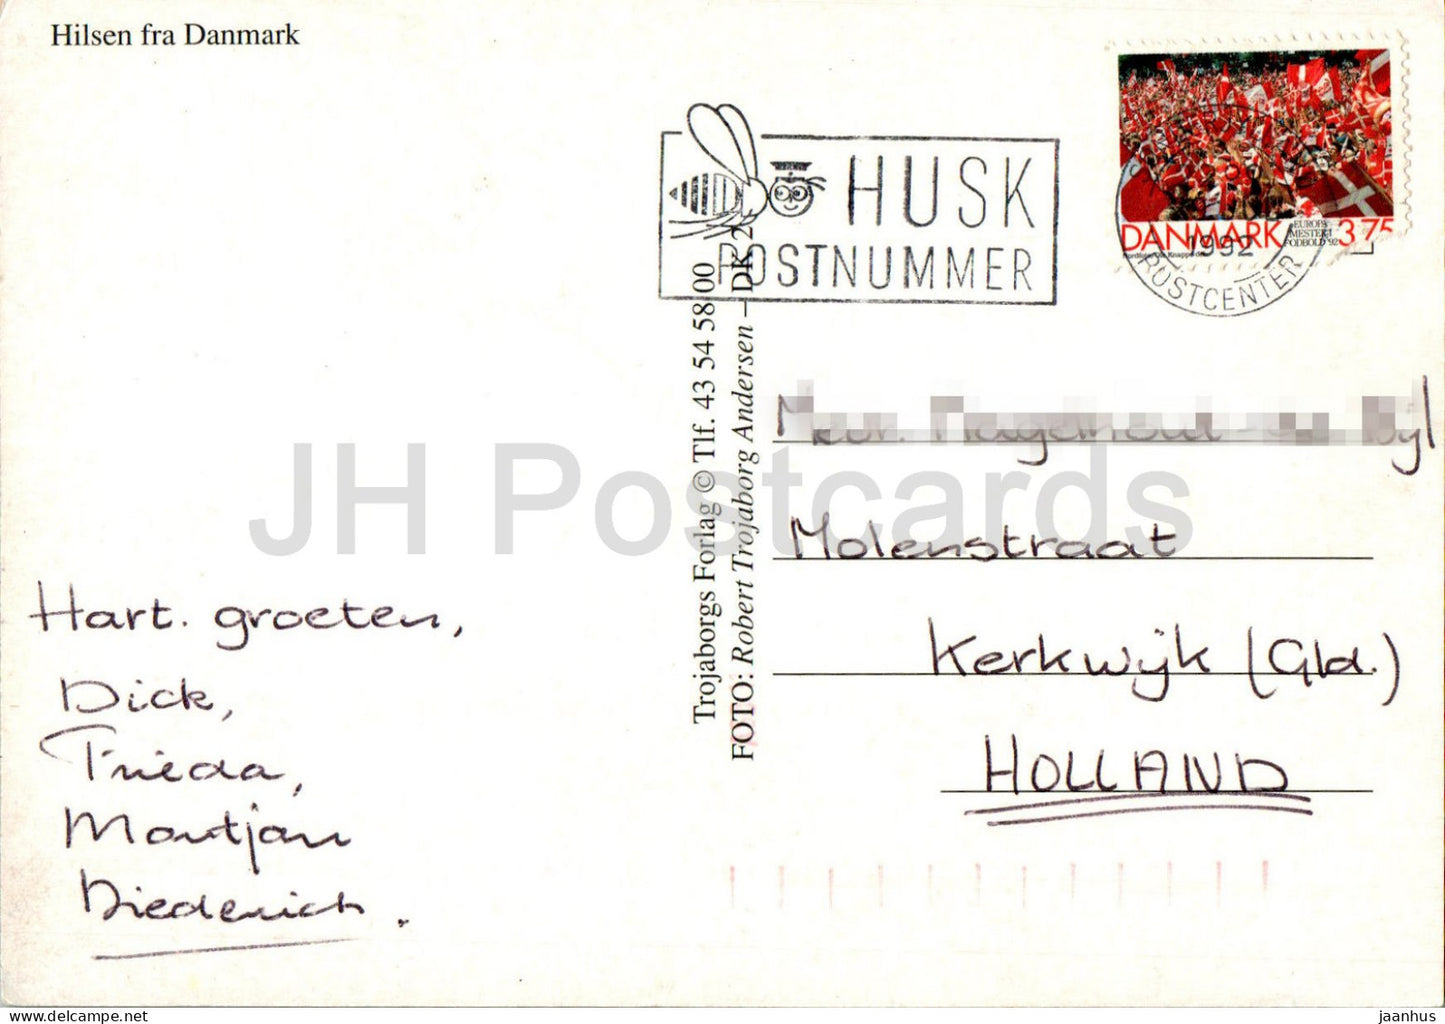 Hilsen fra Danmark - boat - ship - windmill - animals - hedgehog - berries - multiview - 1992 - Denmark - used